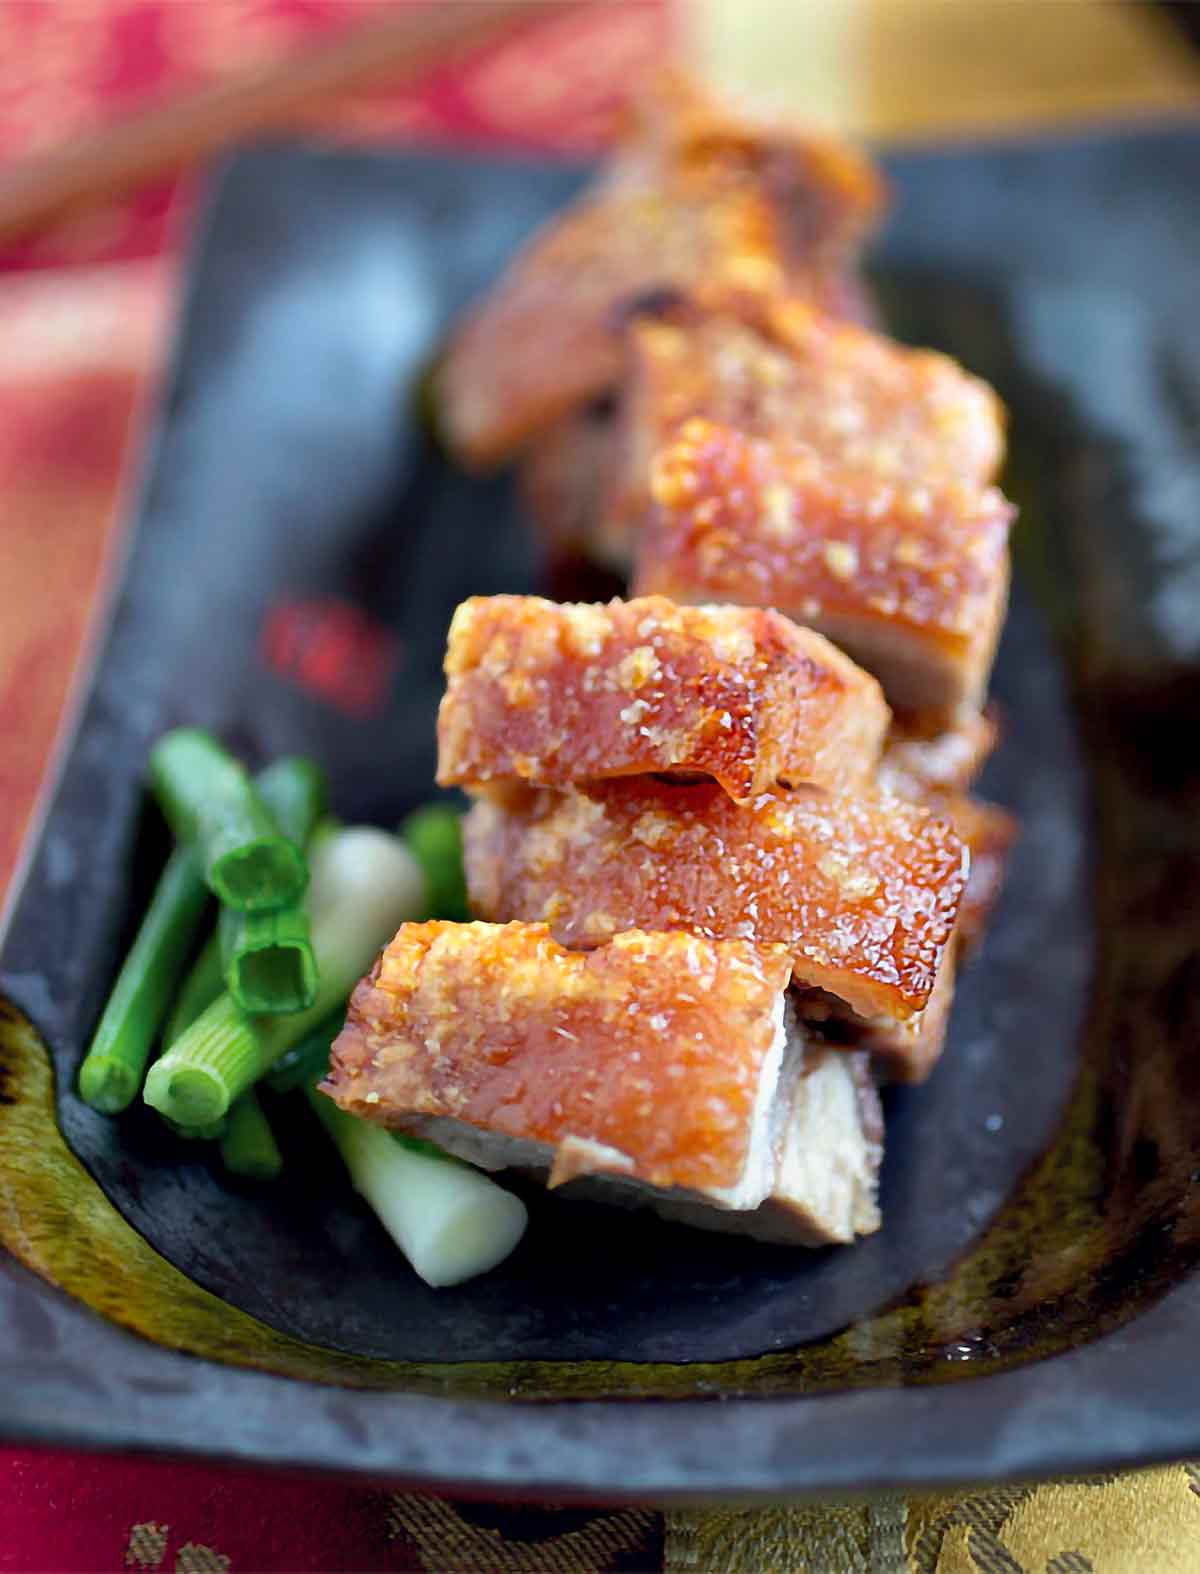 قطع من لحم الخنزير المشوي الصيني في طبق أسود بجانبه بصل أخضر مفروم.